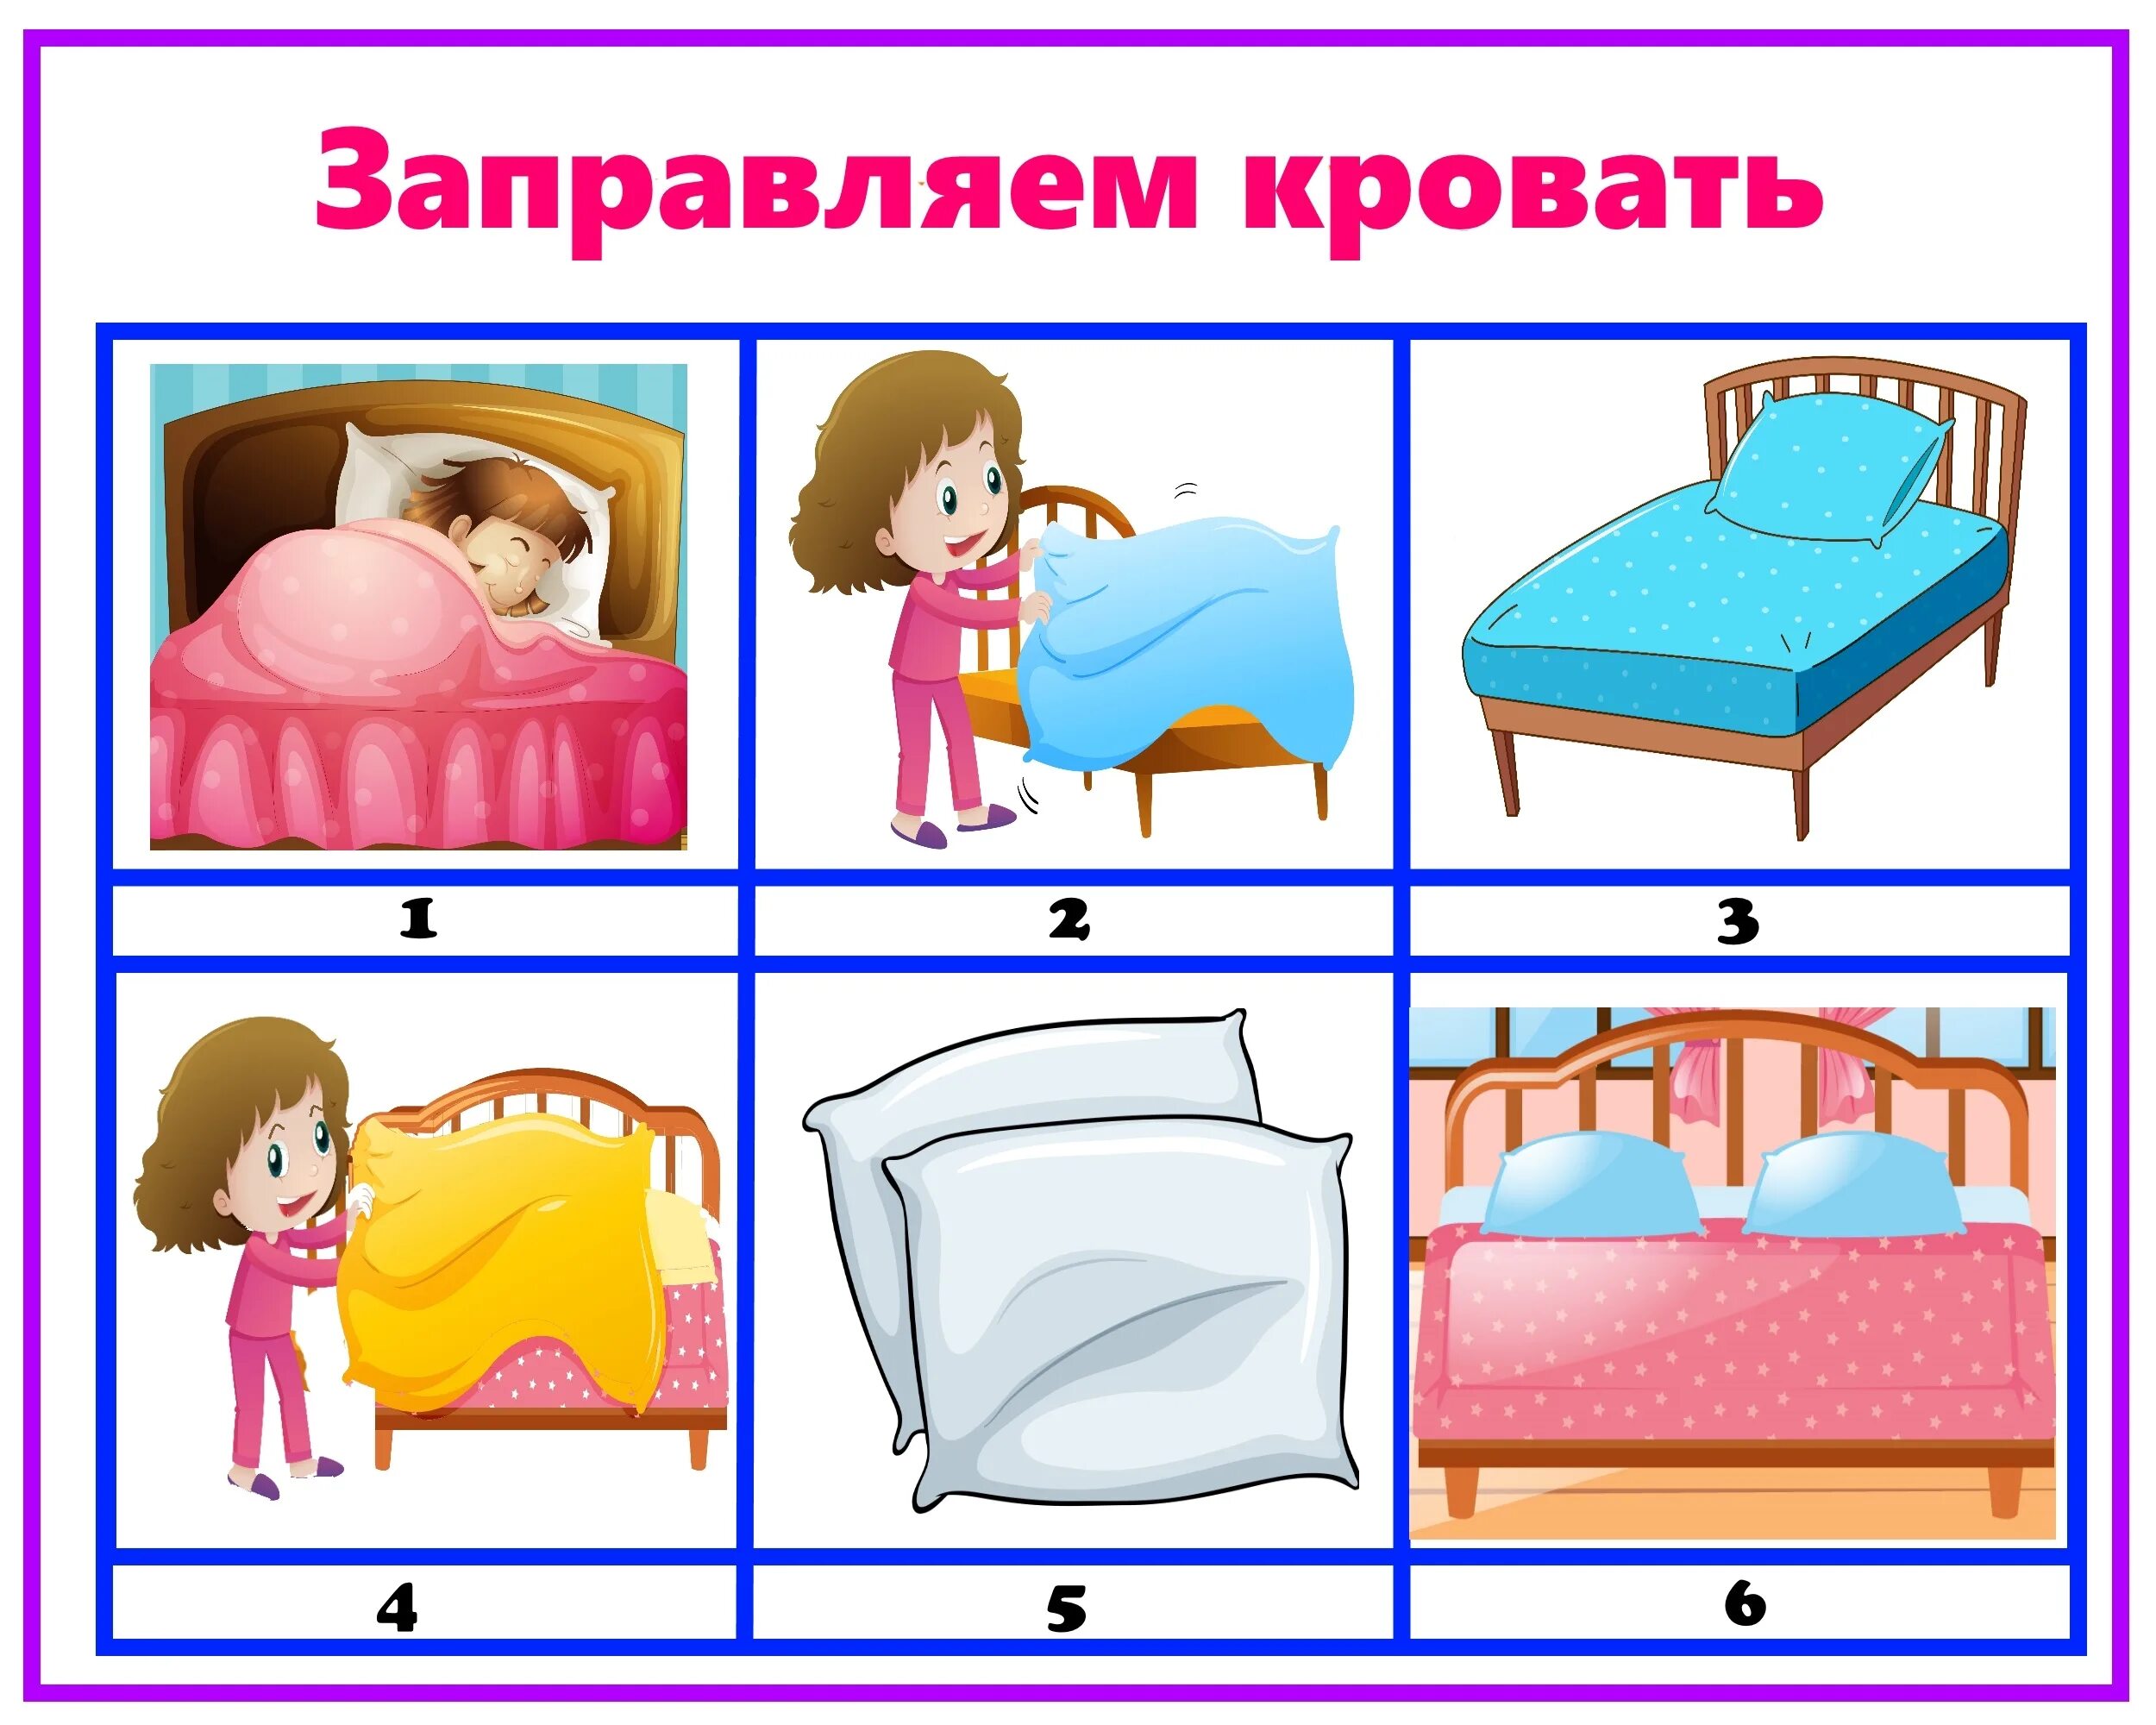 Алгоритмы заправления кровати для детей в детском саду в картинках. Алгоритм заправления кровати в ДОУ. Алгоритмы для детей. Алгоритмы для детей в детском саду.